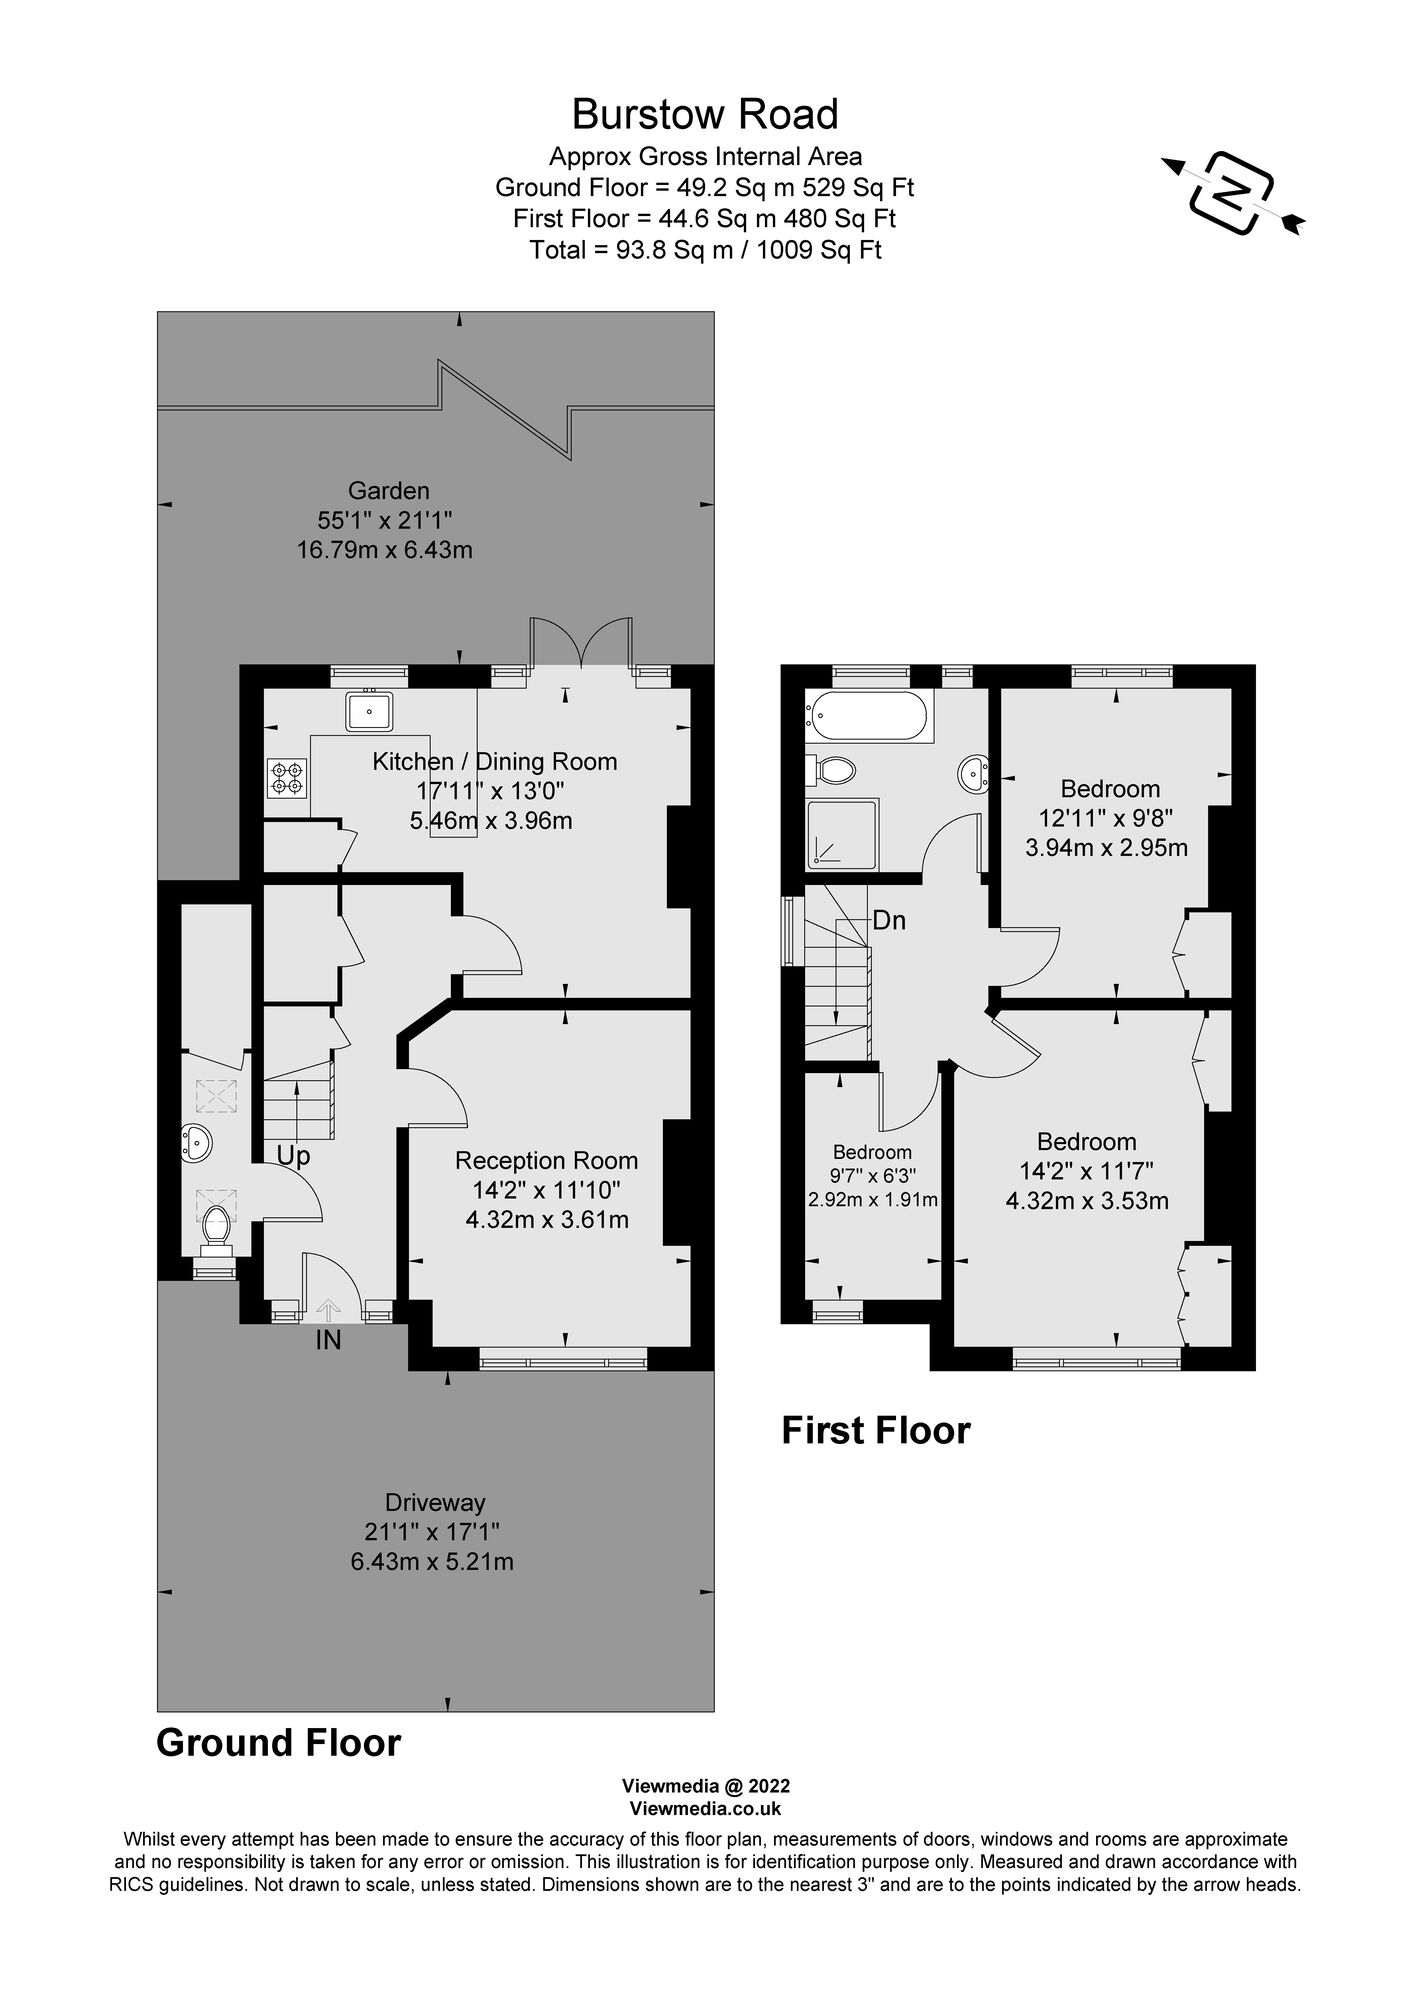 Floor plans